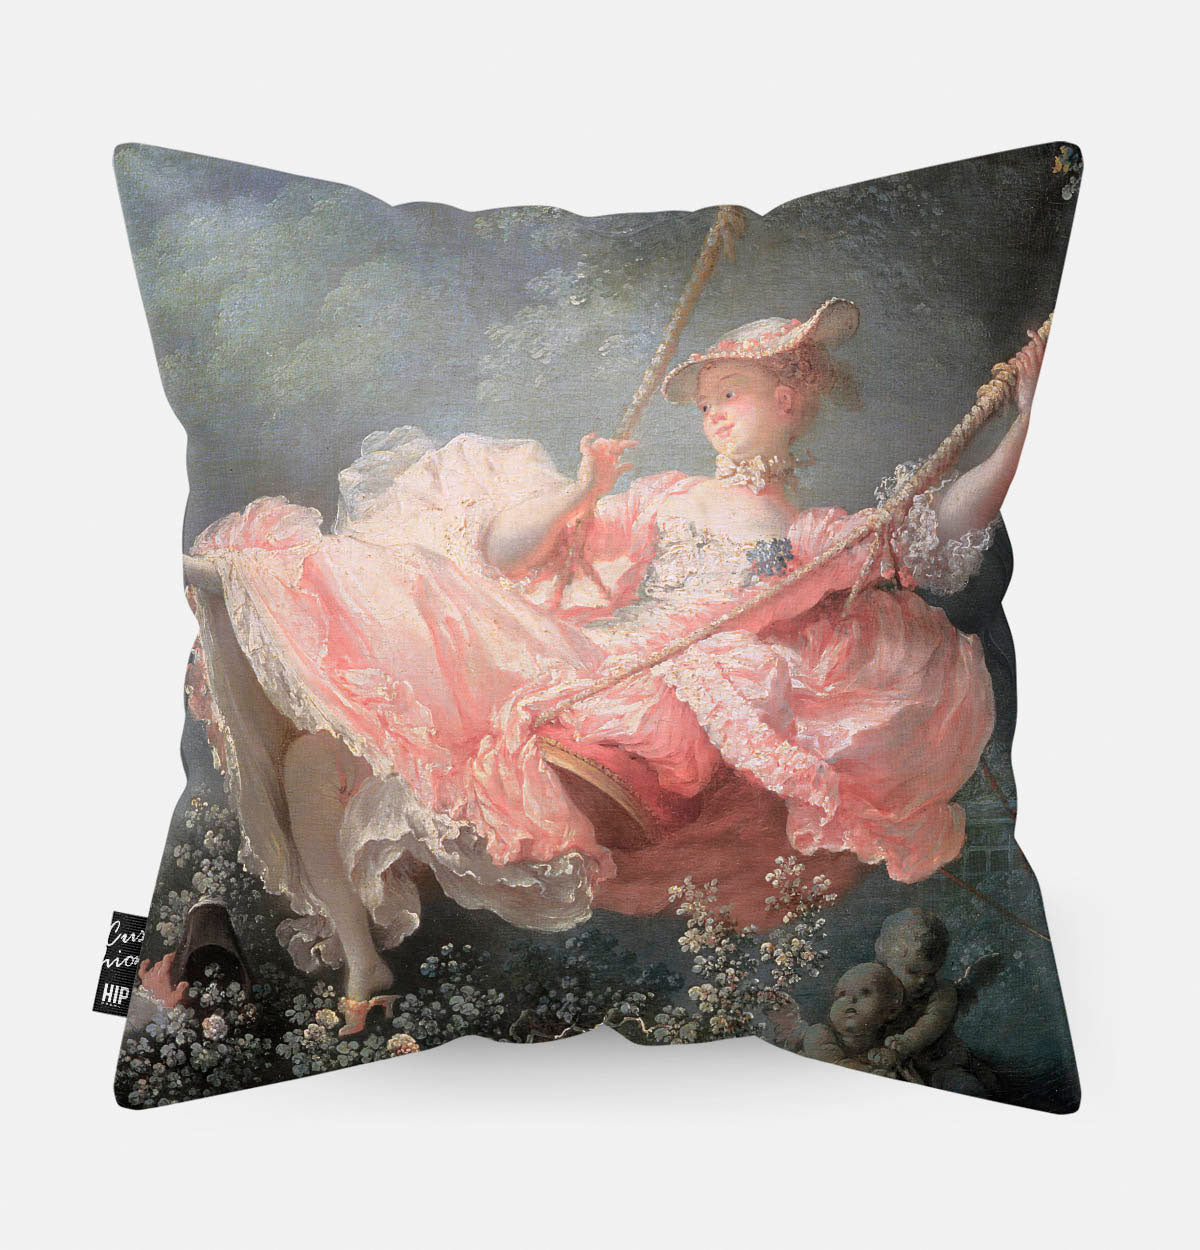 Kussen met schilderij van de schommel met een meisje in het roze erop afgebeeld.